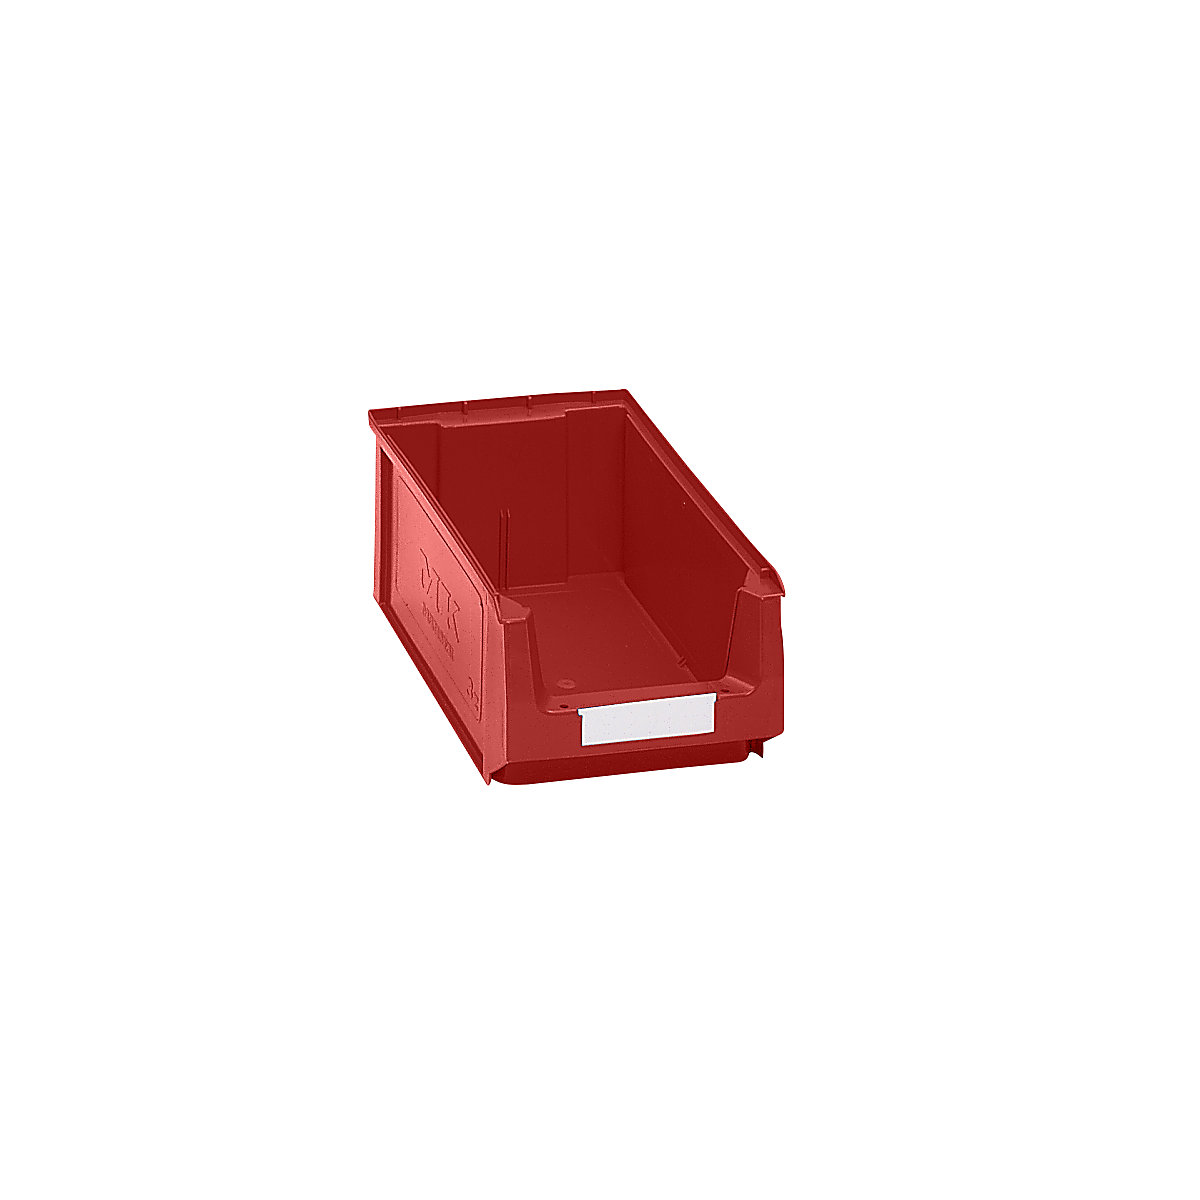 Prepravka s viditeľným obsahom z polyetylénu – mauser, d x š x v 350 x 210 x 140 mm, červená, OJ 14 ks-7